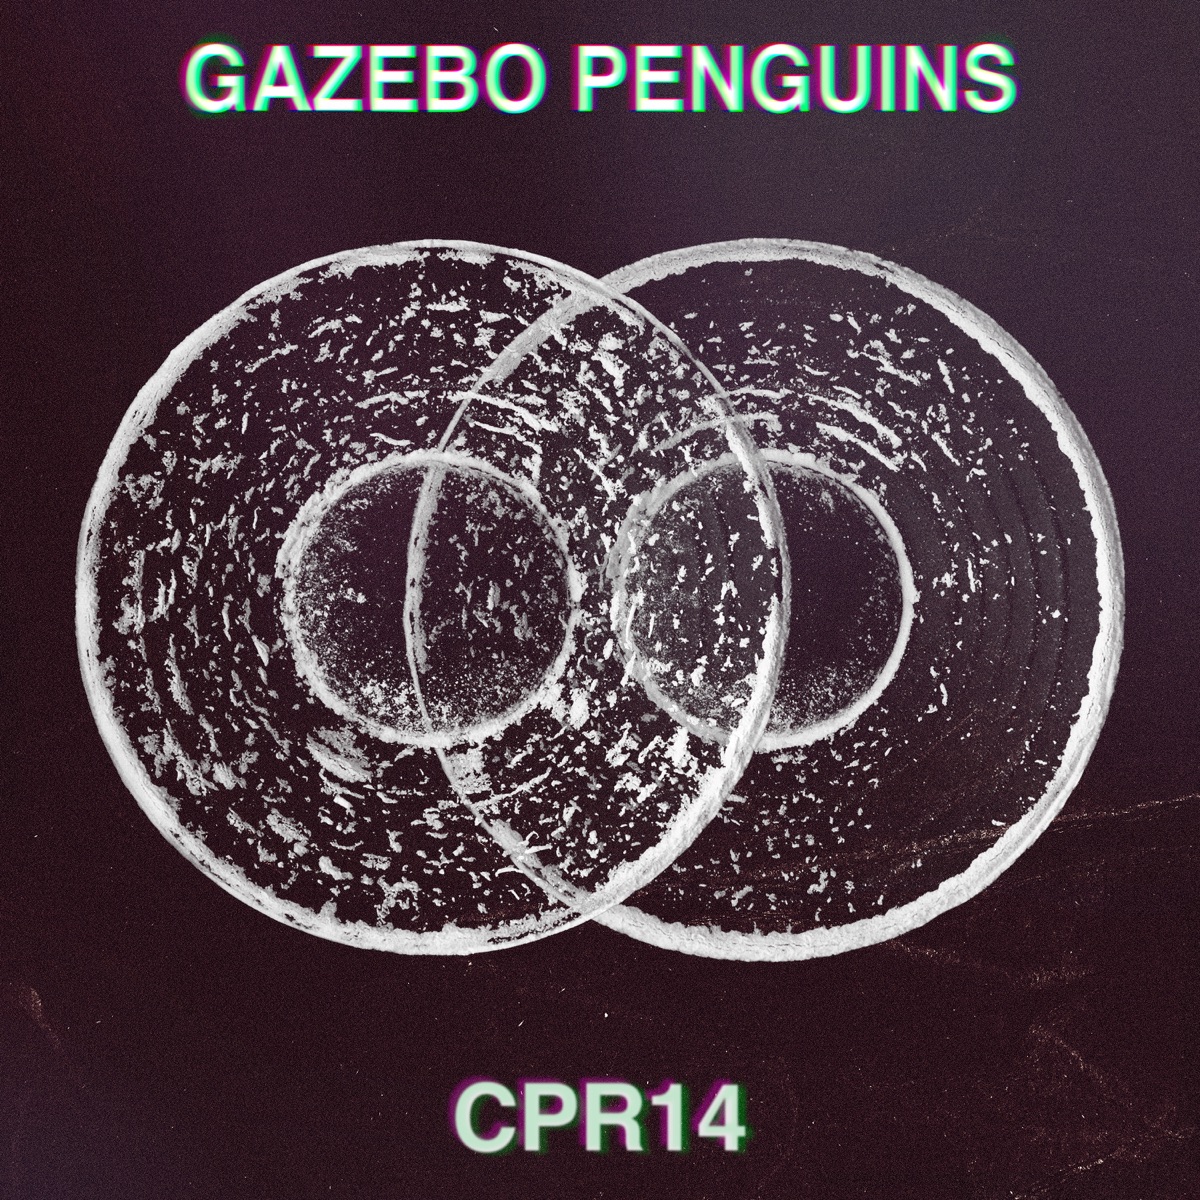 Finito il caffè - Single di Gazebo Penguins su Apple Music